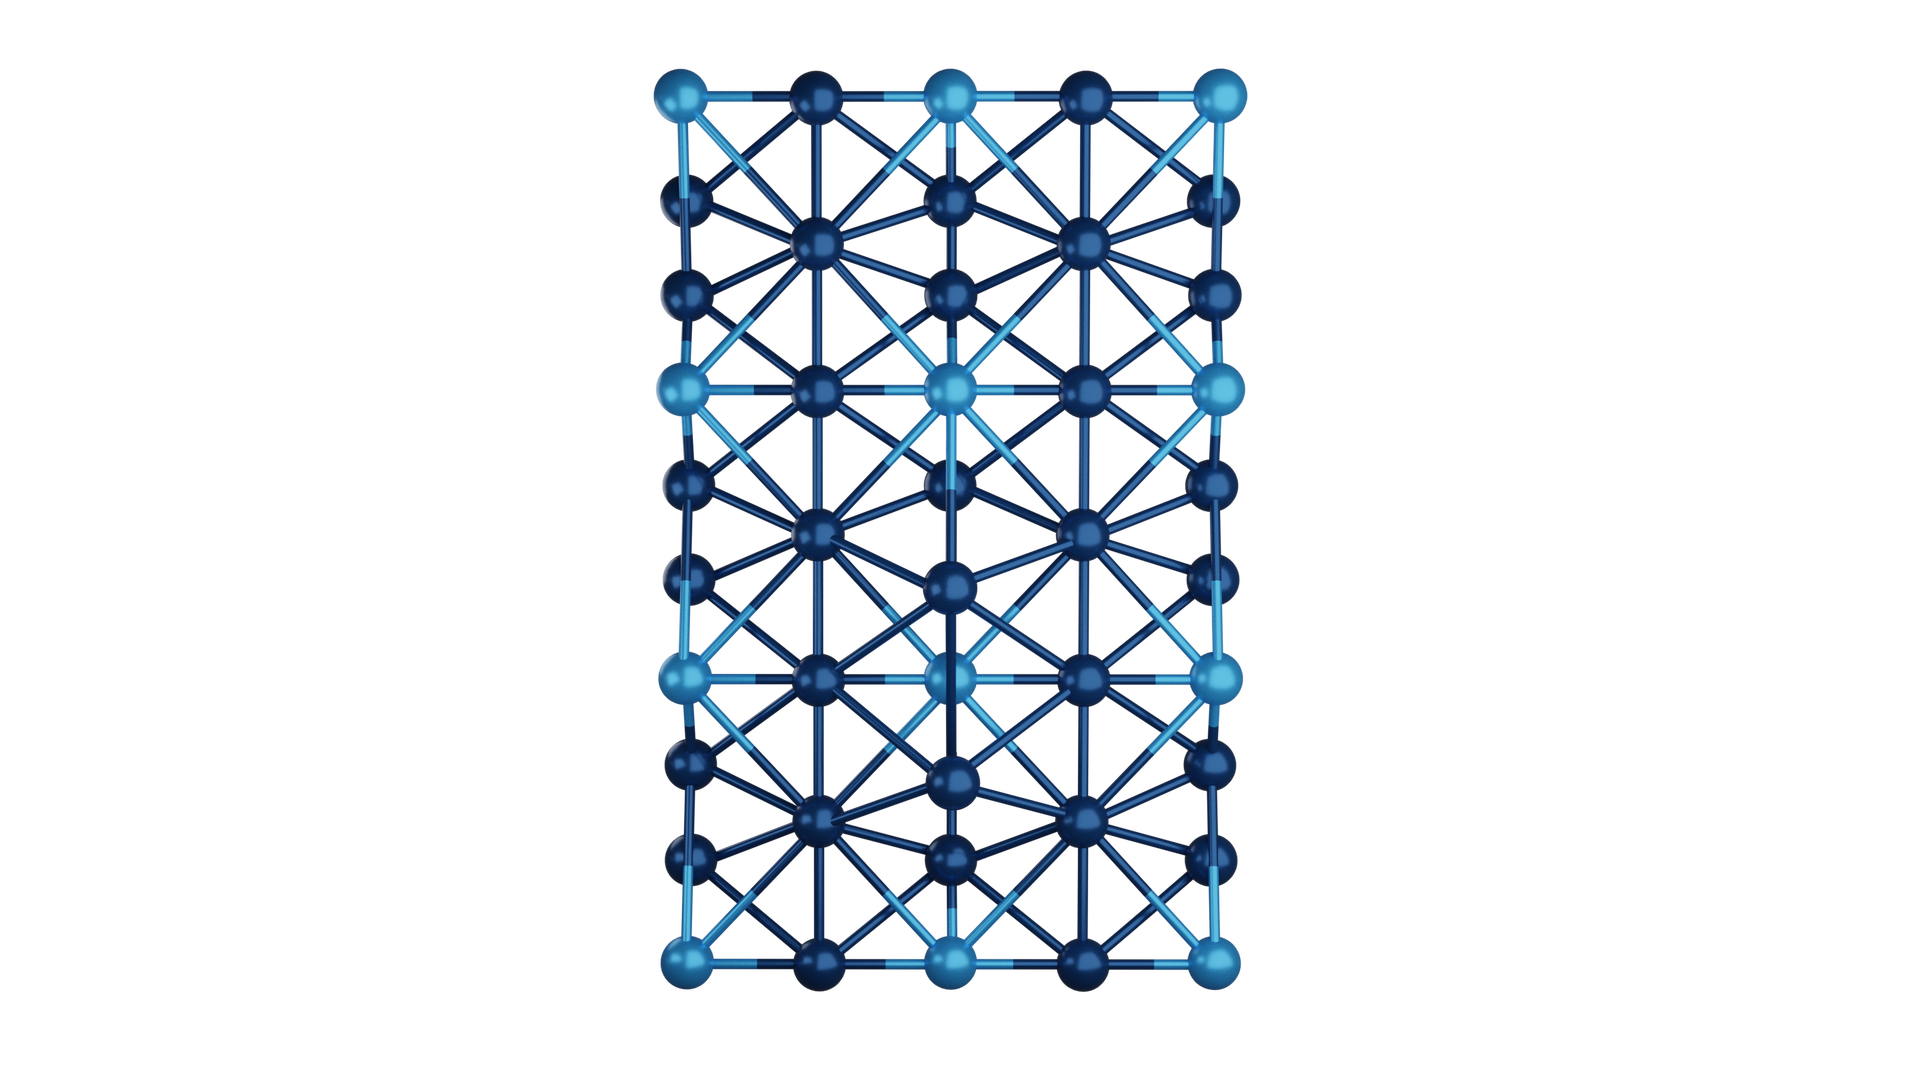 Grafika przedstawia strukturę krystaliczną złożoną z 6 jednostek połączonych ze sobą. Jedna jednostka jest zbudowana z 10 kulek ułożonych w kształt kwadratu i 1 kulki umiejscowionej w jego centrum. Kulki znajdujące się w rogach mają kolor jasnoniebieski, natomiast pozostałe mają kolor granatowy. Każda kulka połączona jest z kulką sąsiadującą z nią. Ramiona wychodzące od kulek jasnoniebieskich są w połowie jasnoniebieskie i granatowe. Tworzy się sieć. 